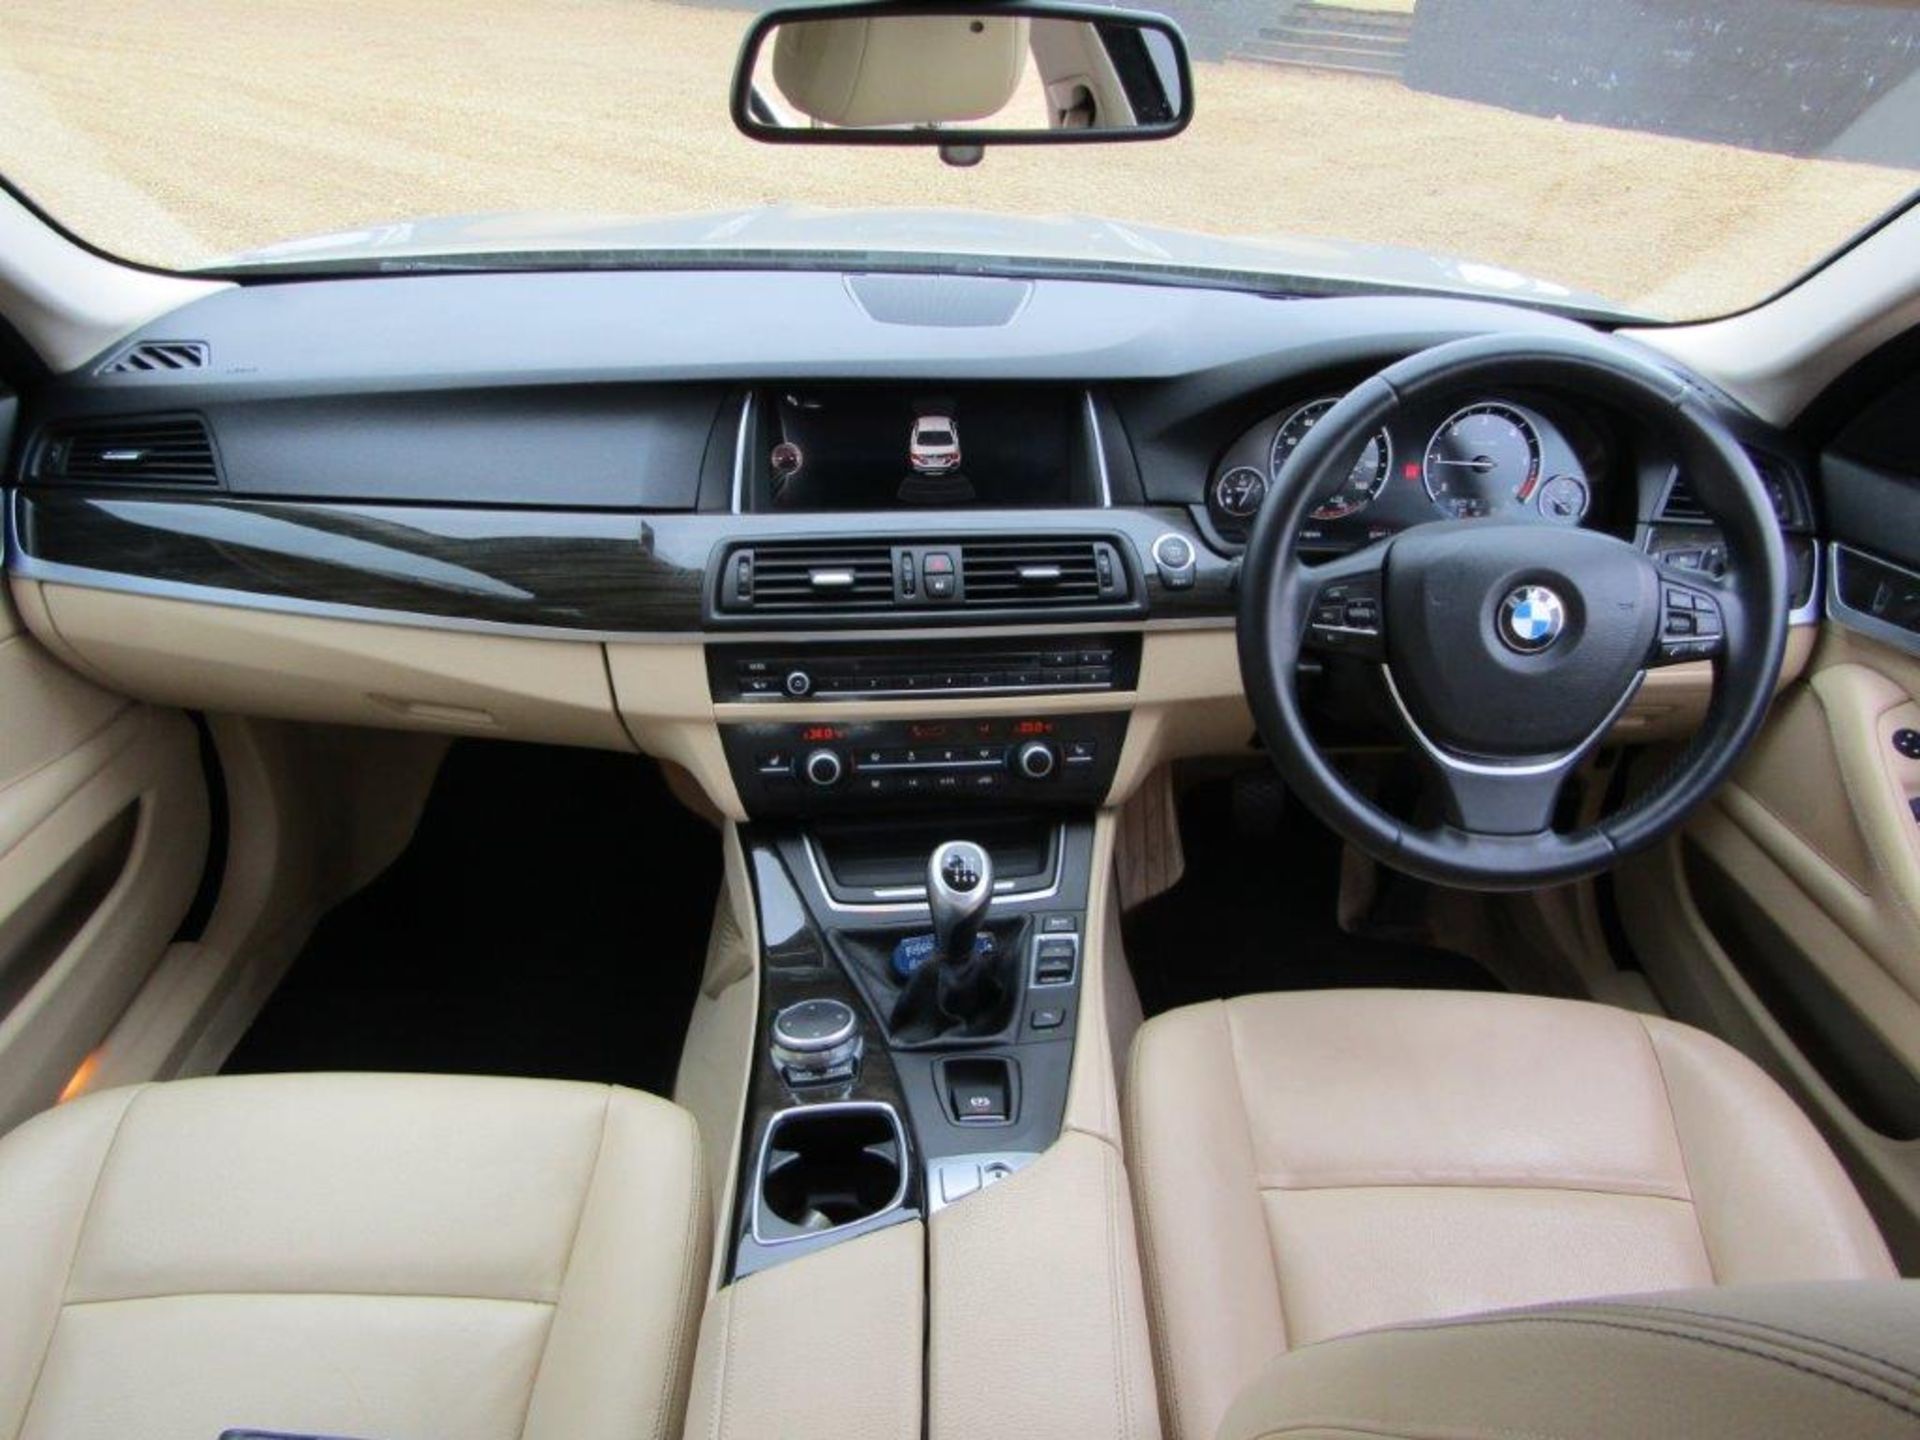 64 15 BMW 520D Luxury - Image 25 of 33